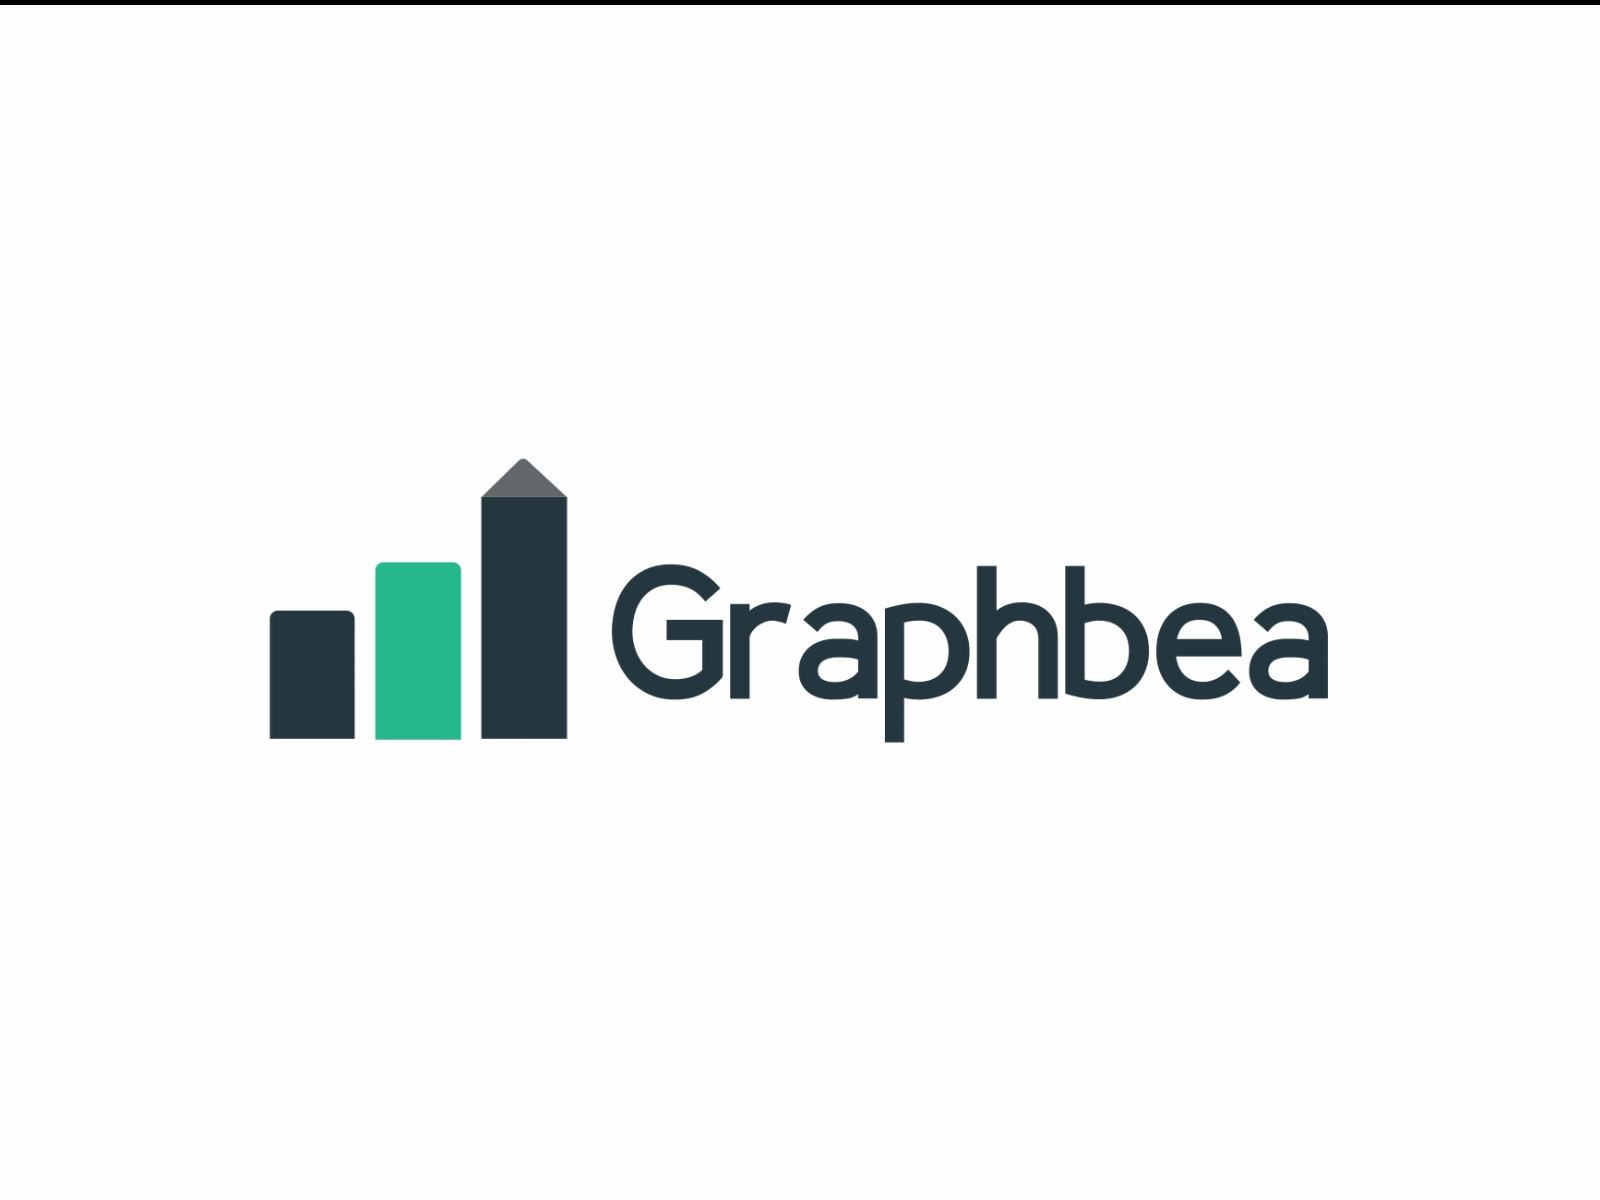 Graphbea Logo animation 2d animation animated gif animated logo intro logo logo animation logo reveal logoanimation motion graphics